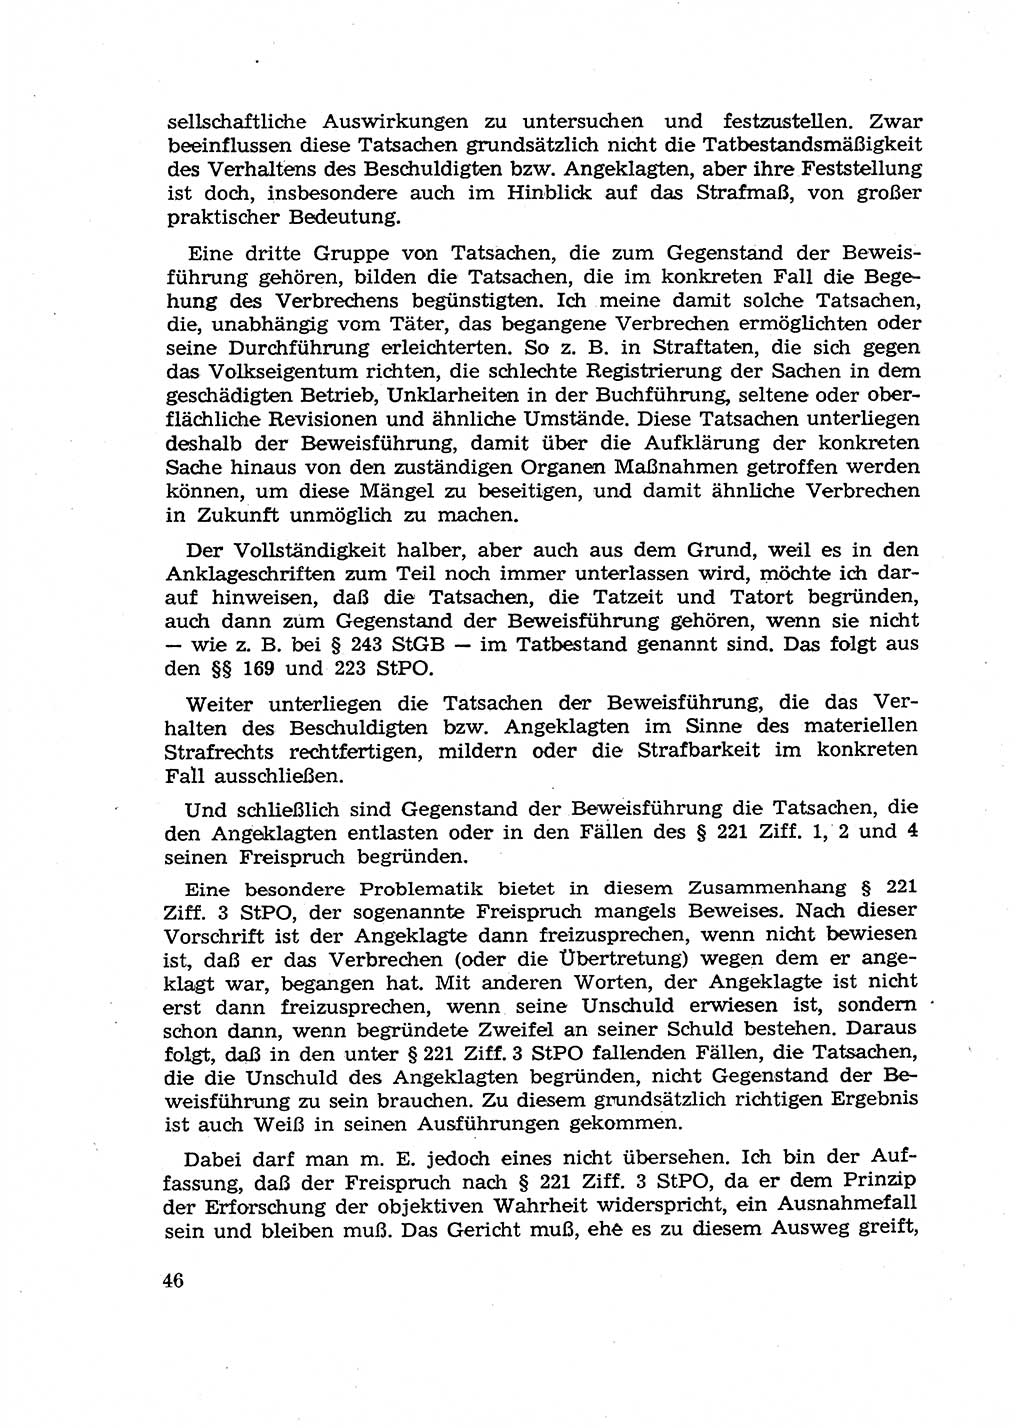 Fragen des Beweisrechts im Strafprozess [Deutsche Demokratische Republik (DDR)] 1956, Seite 46 (Fr. BeweisR. Str.-Proz. DDR 1956, S. 46)